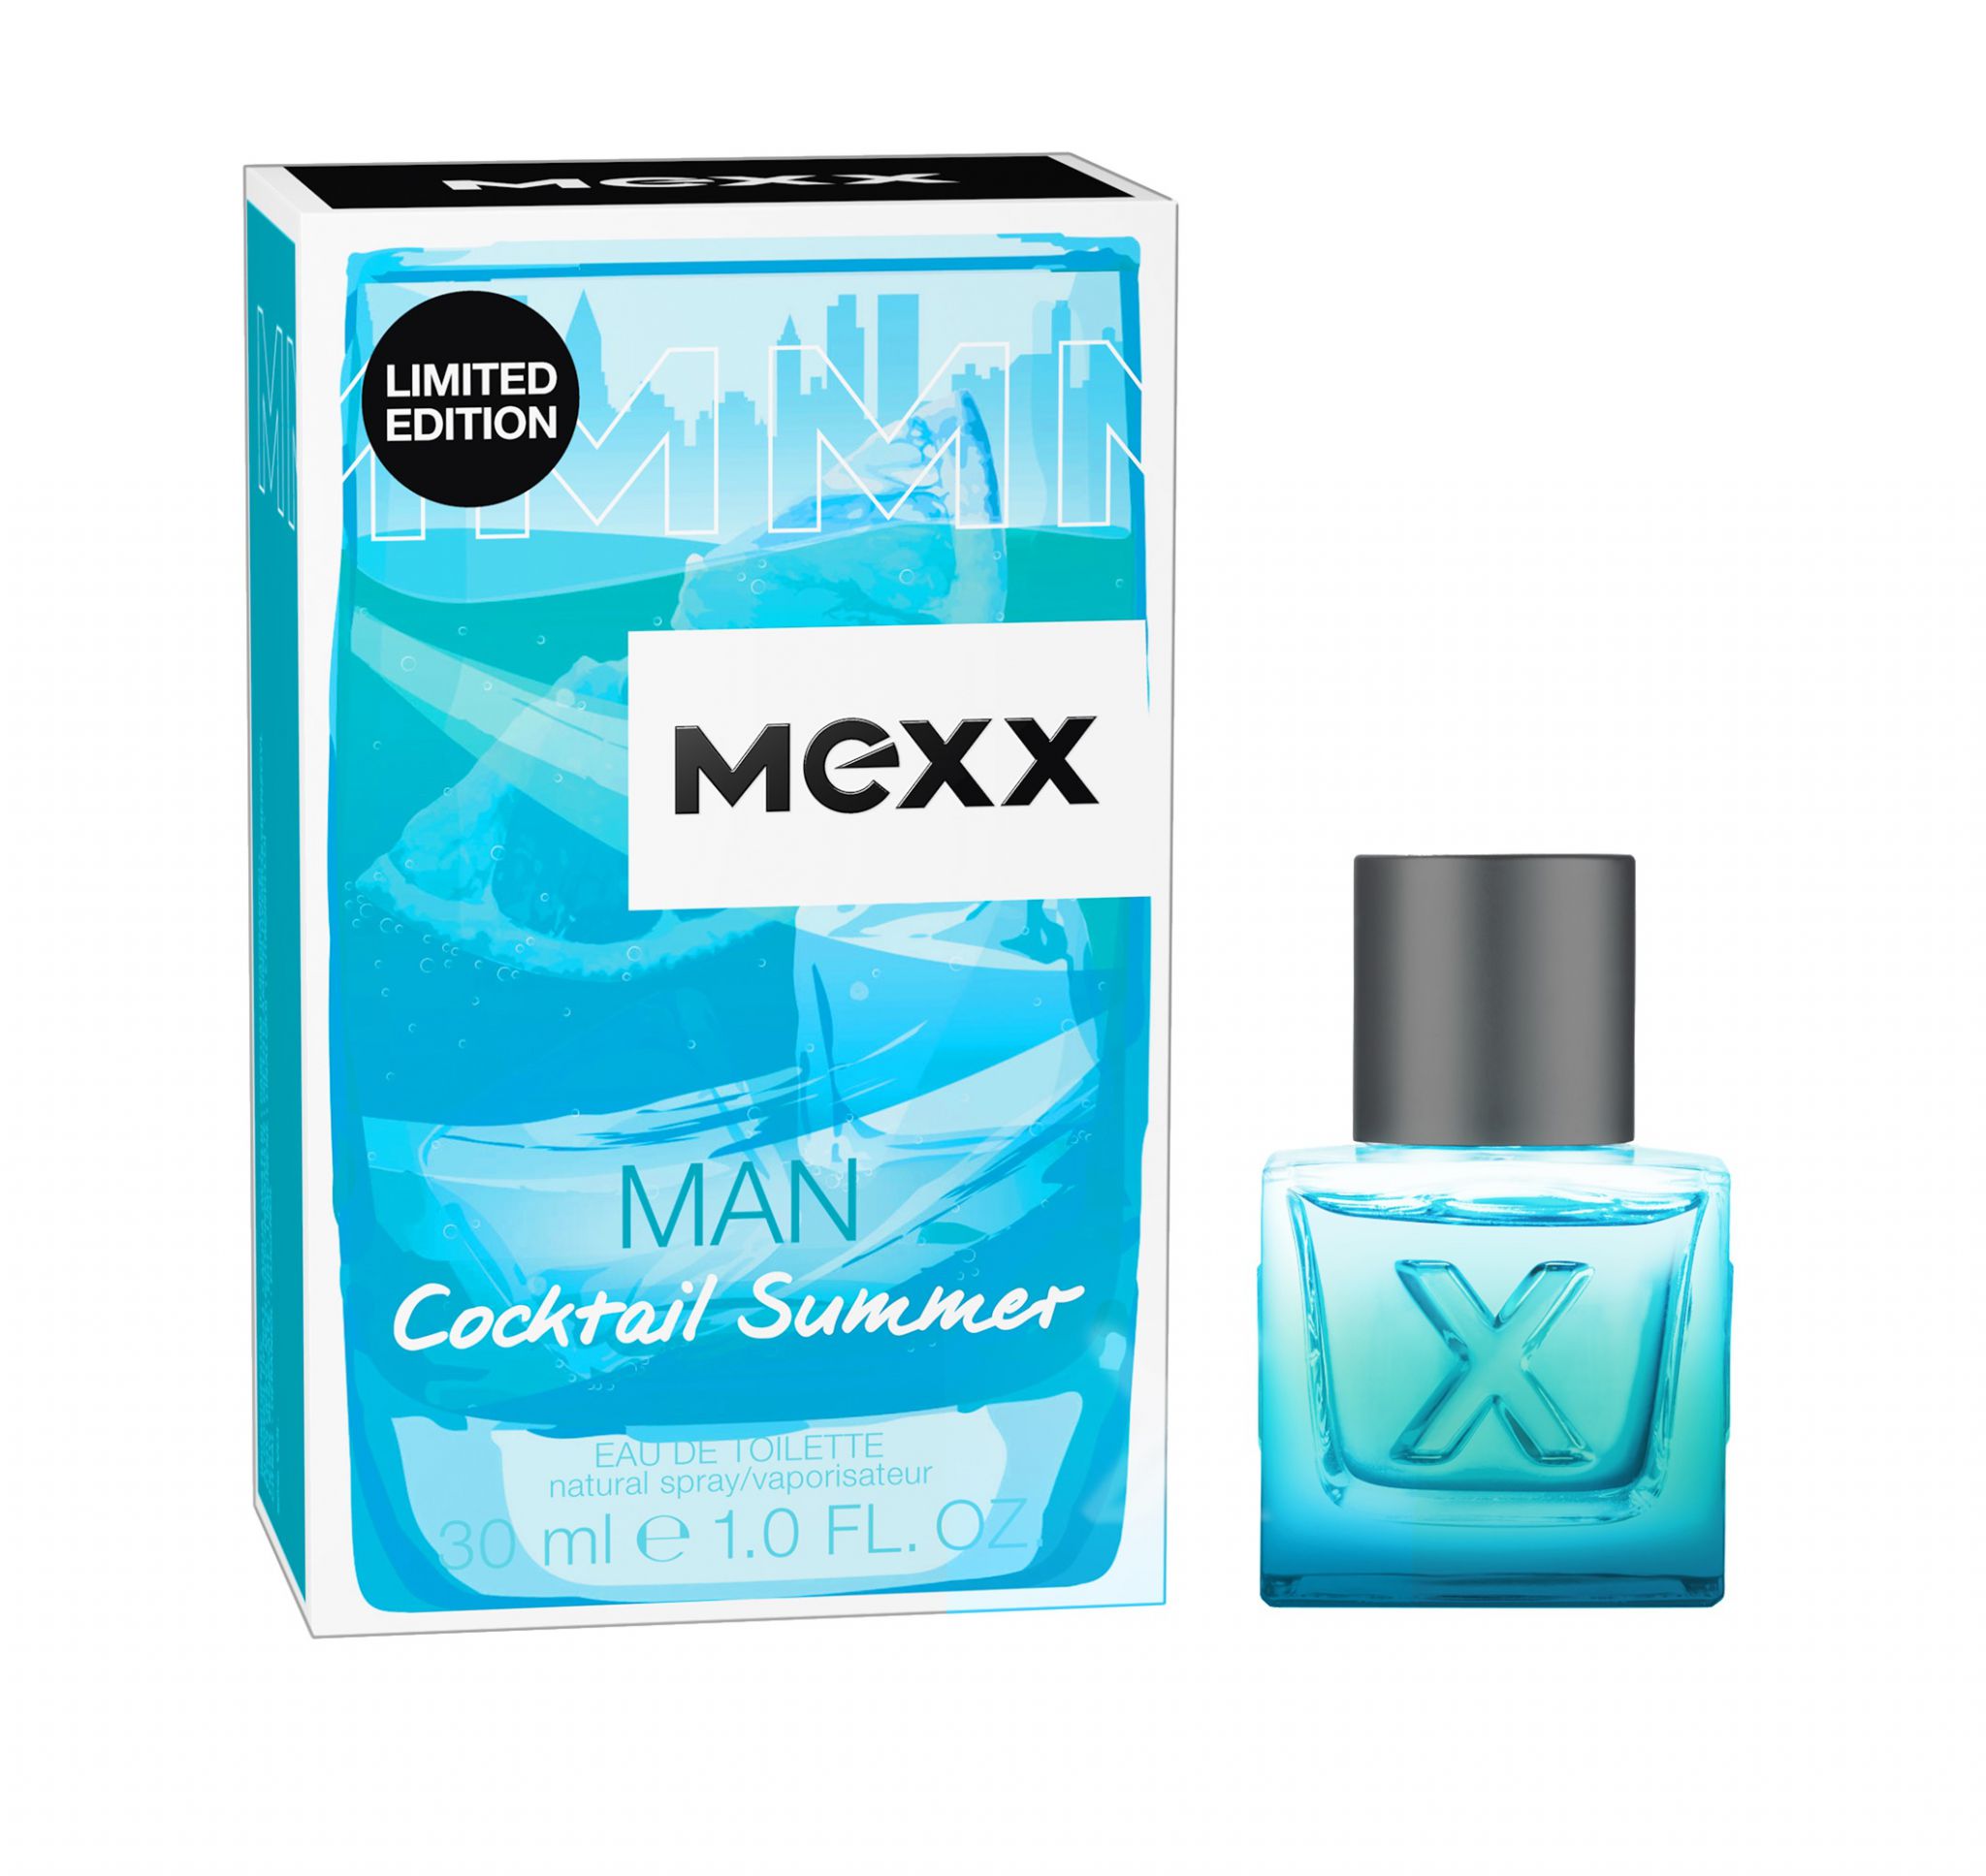 Мужские ароматы на лето. Туалетная вода Mexx Cocktail Summer man. Mexx Blue духи мужские. Мехх туалетная вода мужская 30 мл. Духи Mexx мужские 30мл.